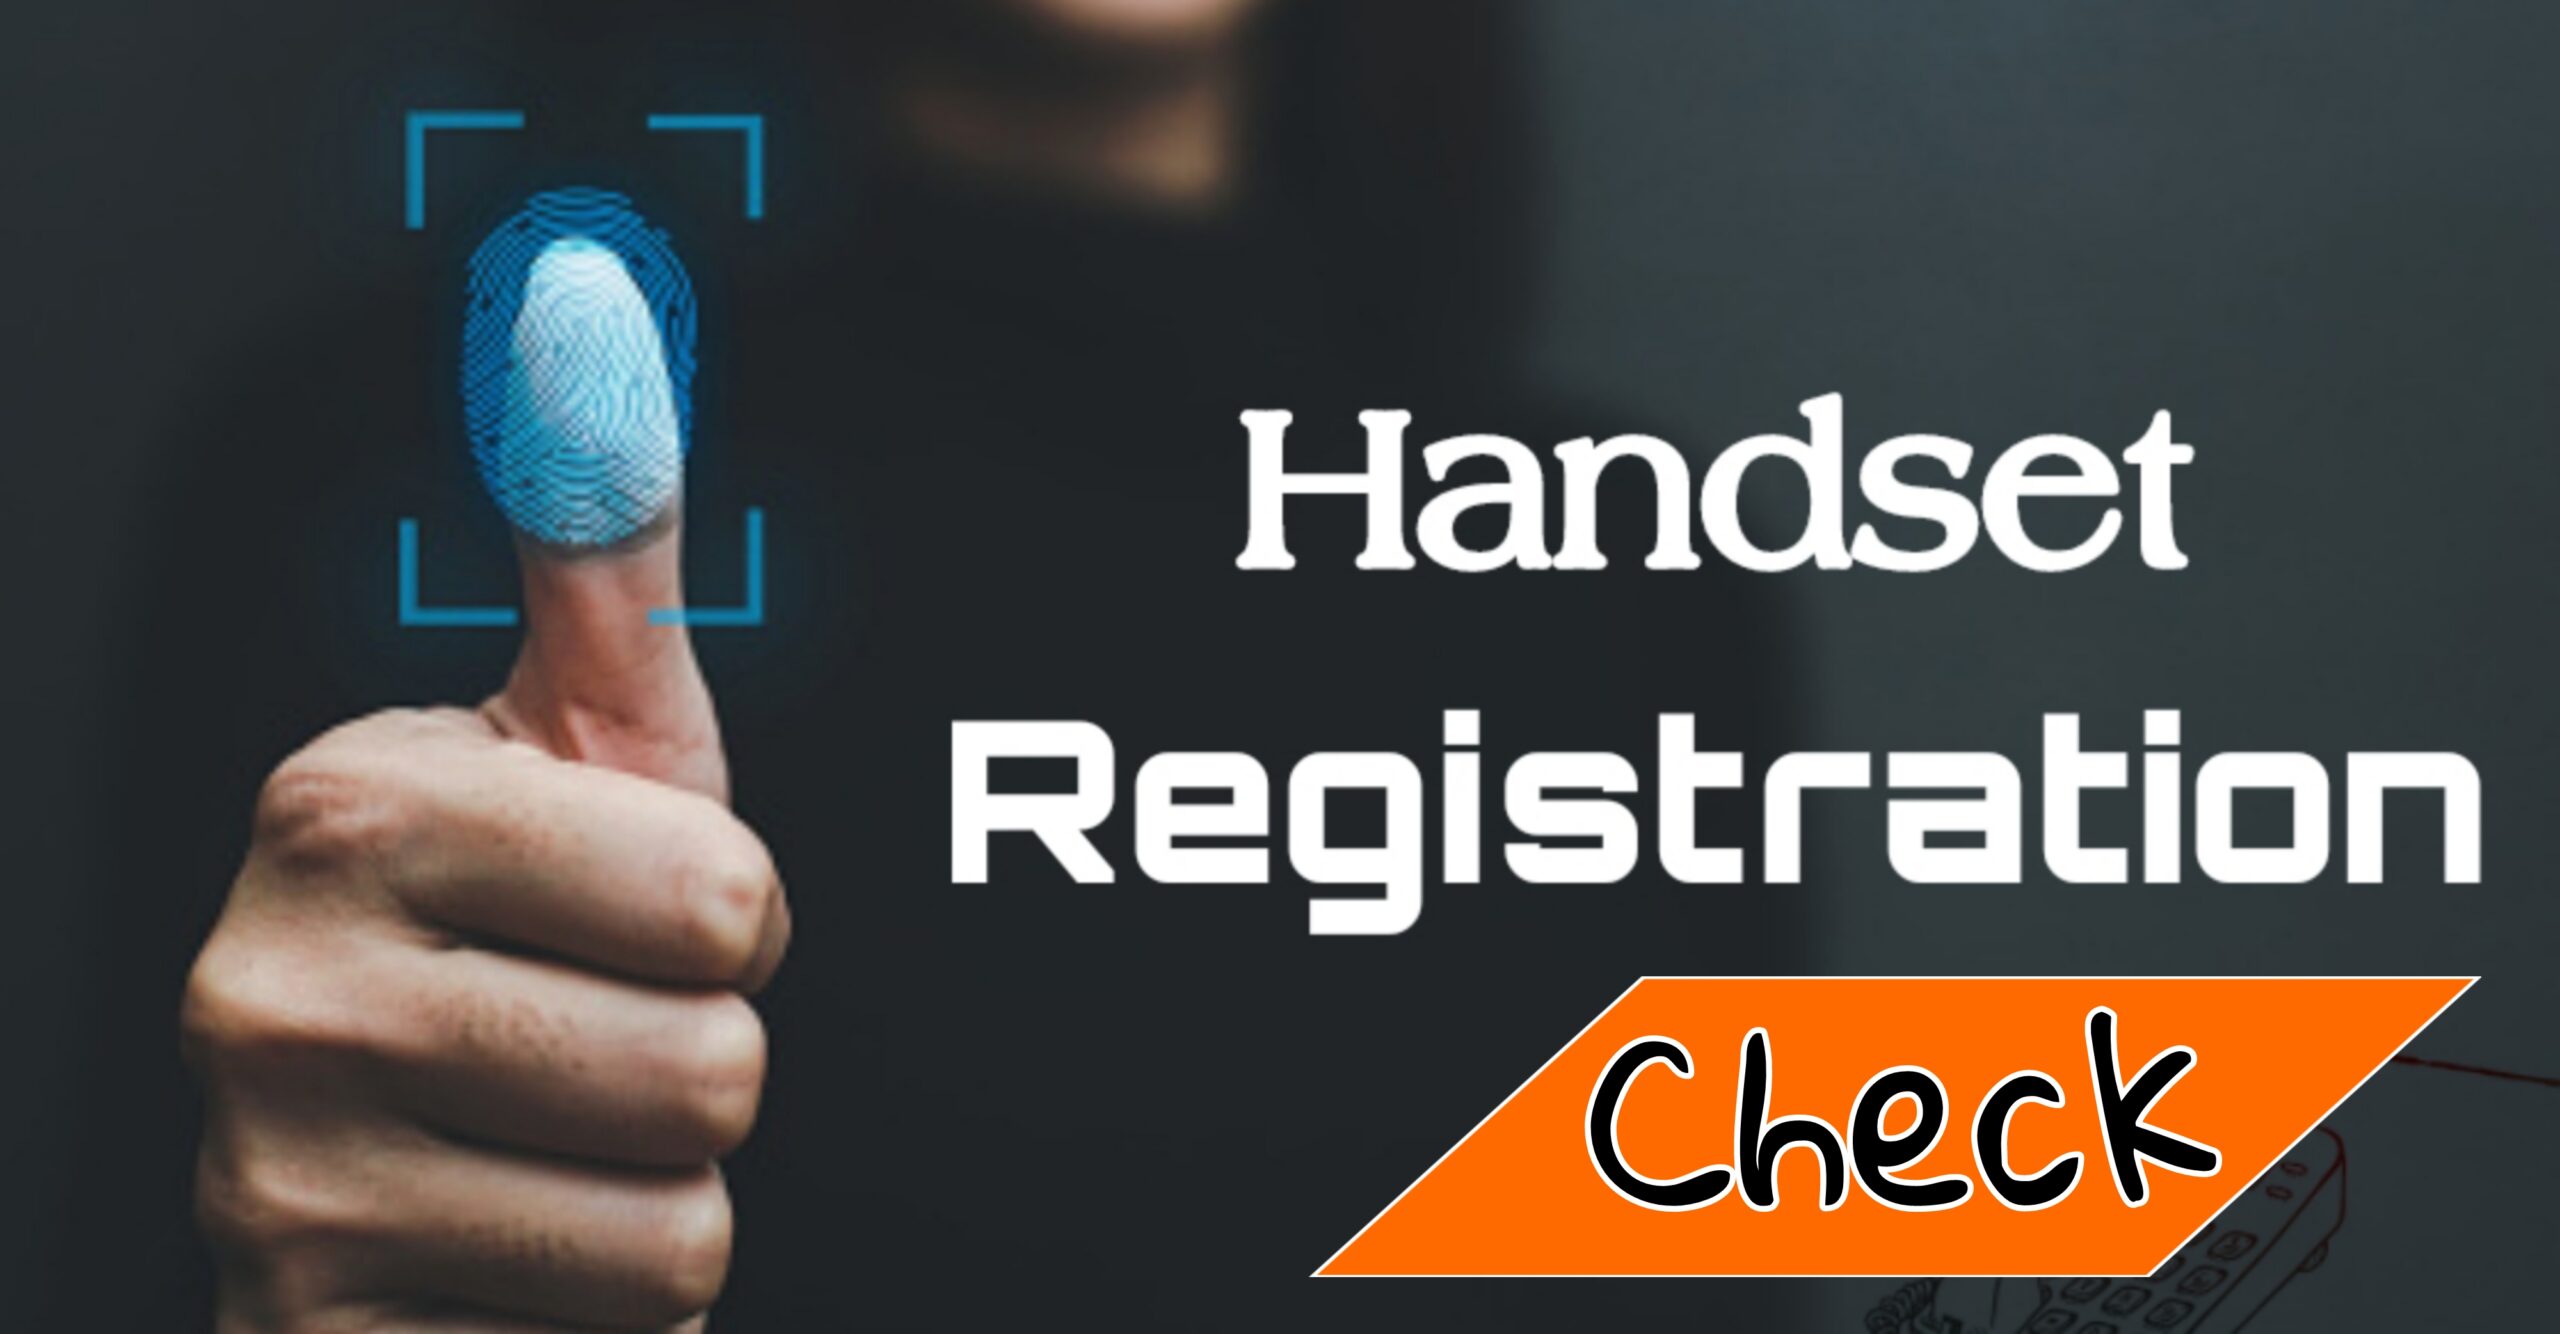 Handset registration in bangladesh